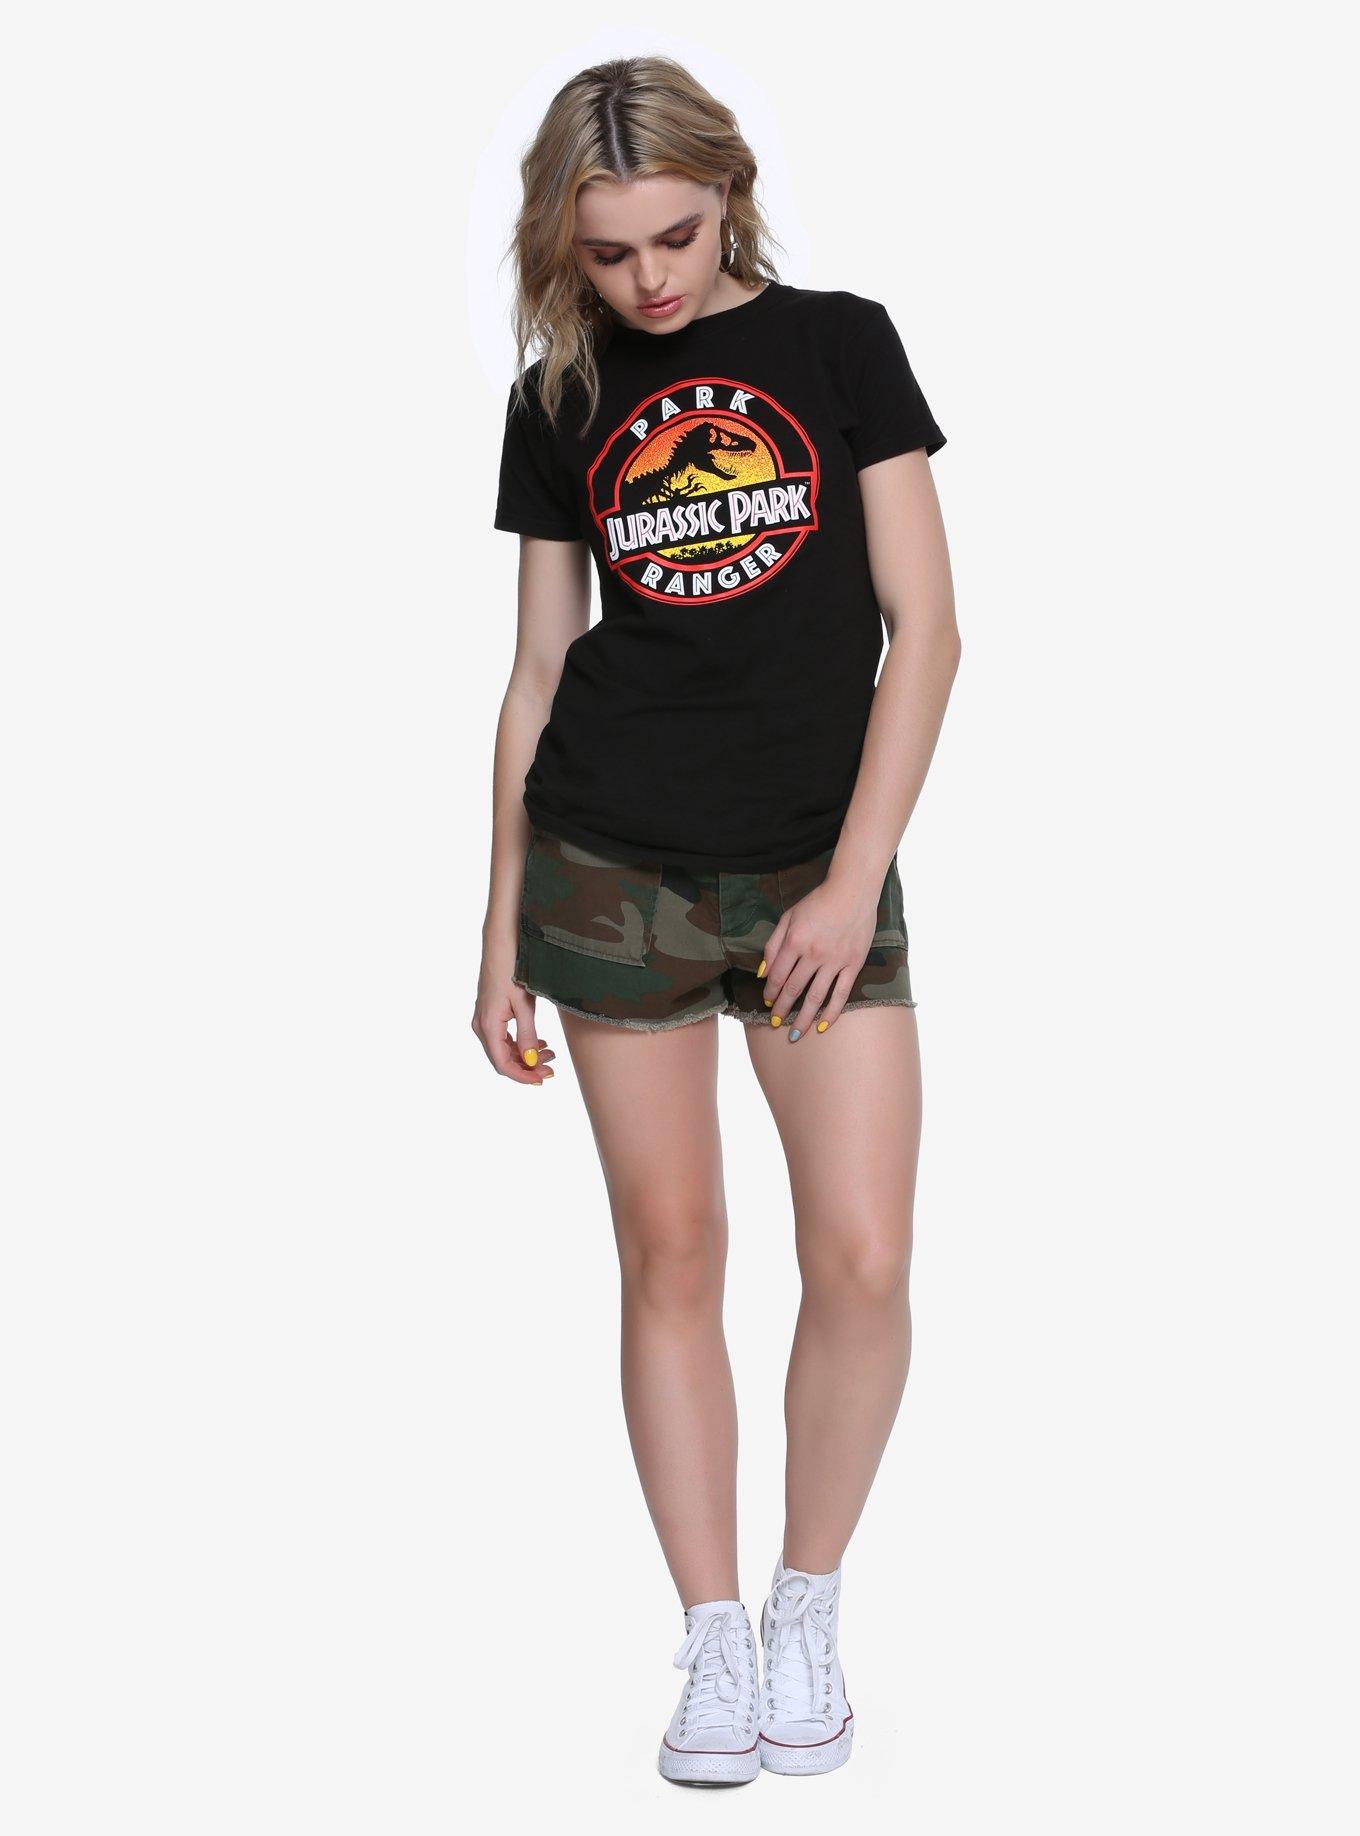 Jurassic Park Ranger Girls T-Shirt, , alternate